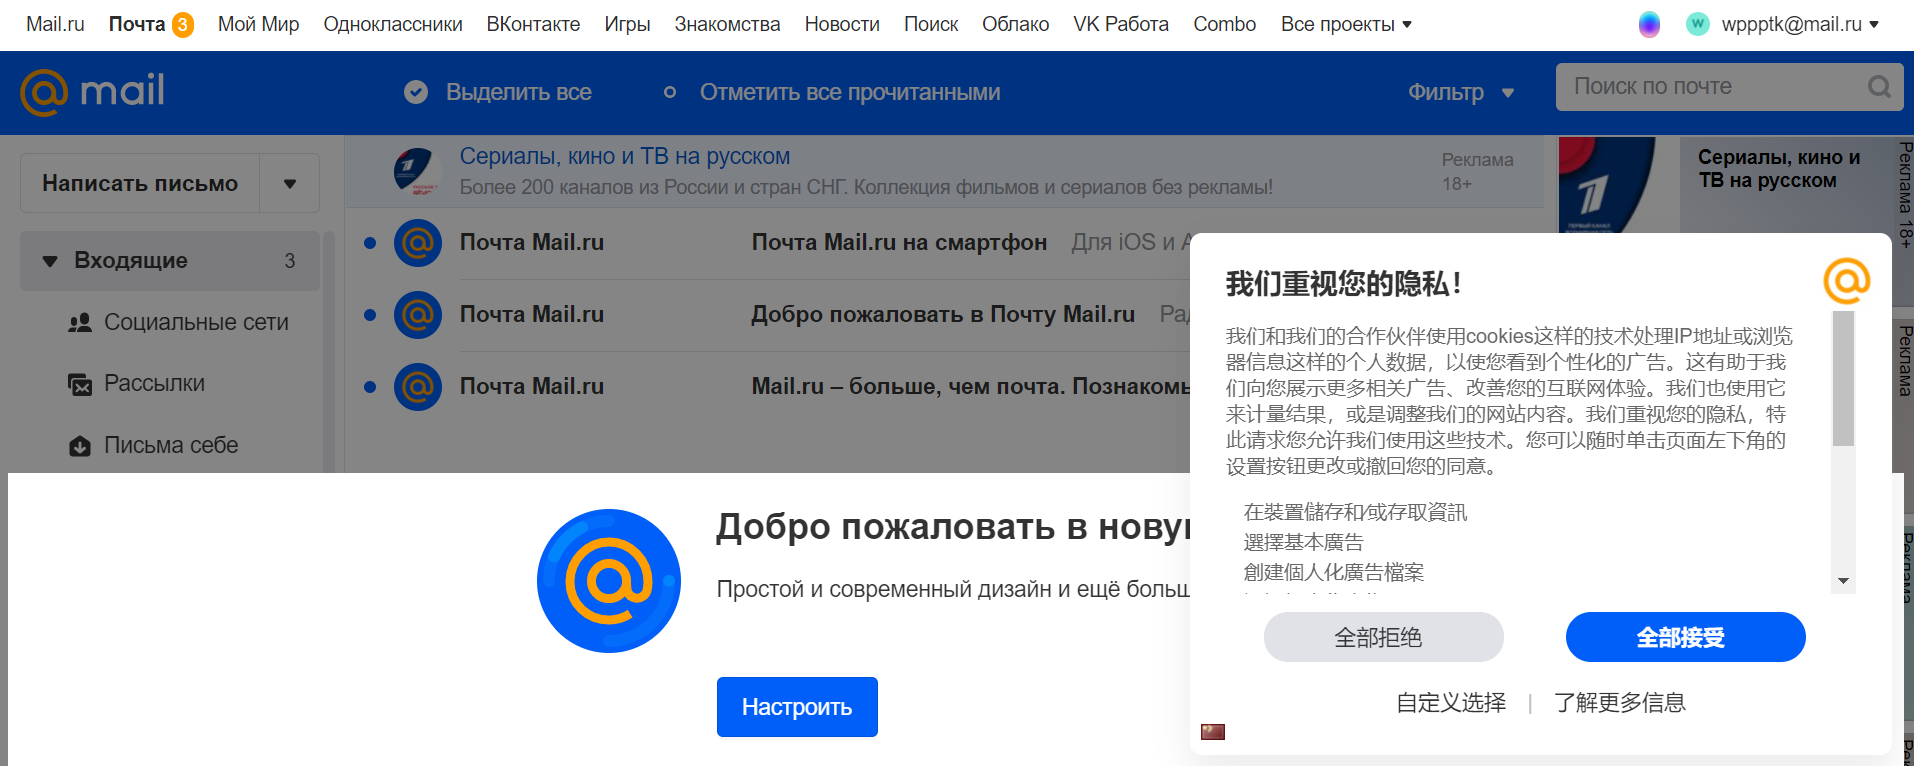 创建mai.ru账户成功